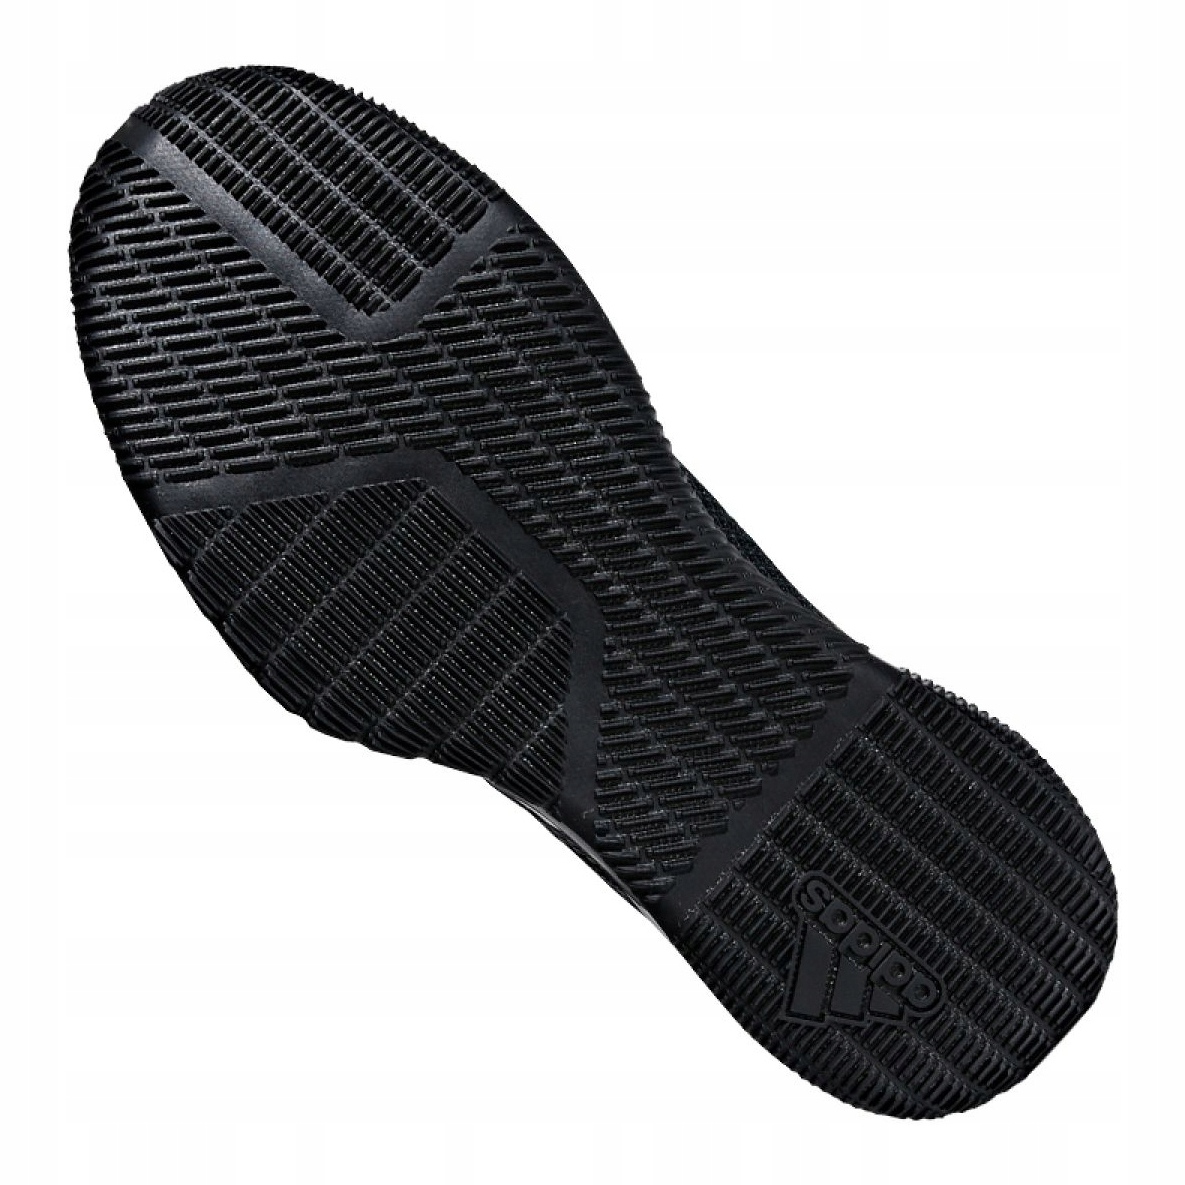 mejilla curva disculpa Adidas Crazytrain Pro 3.0 M AQ0414 shoes black - KeeShoes